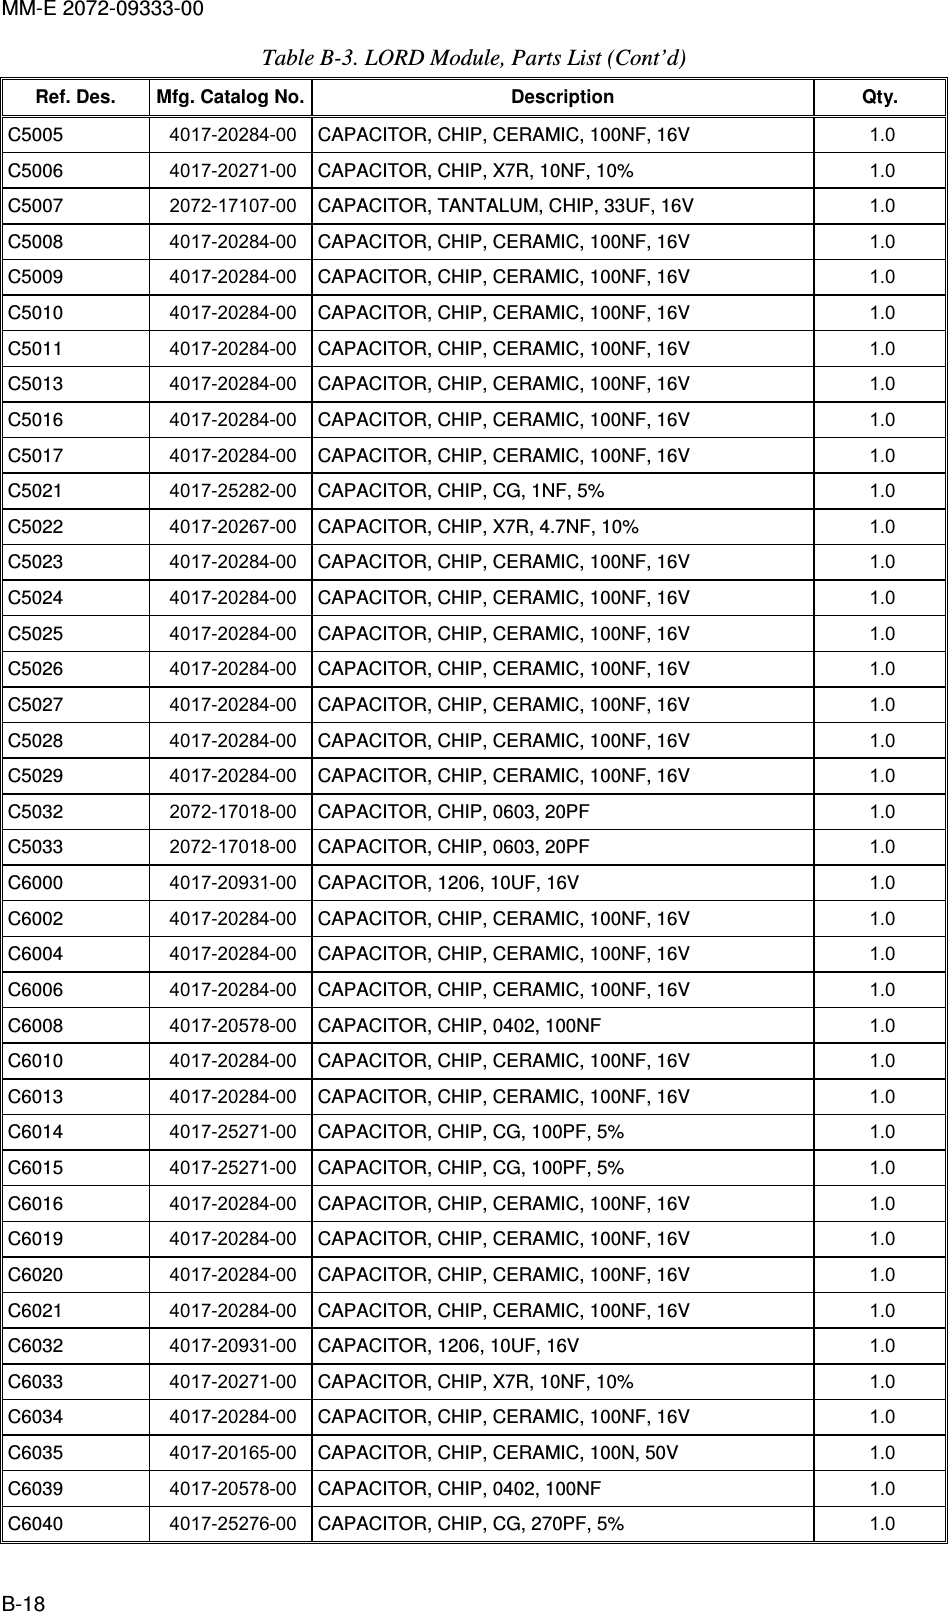 MM-E 2072-09333-00 B-18 Table  B-3. LORD Module, Parts List (Cont’d) Ref. Des.  Mfg. Catalog No. Description  Qty. C5005   4017-20284-00  CAPACITOR, CHIP, CERAMIC, 100NF, 16V  1.0   C5006   4017-20271-00  CAPACITOR, CHIP, X7R, 10NF, 10%  1.0   C5007   2072-17107-00  CAPACITOR, TANTALUM, CHIP, 33UF, 16V  1.0   C5008   4017-20284-00  CAPACITOR, CHIP, CERAMIC, 100NF, 16V  1.0   C5009   4017-20284-00  CAPACITOR, CHIP, CERAMIC, 100NF, 16V  1.0   C5010   4017-20284-00  CAPACITOR, CHIP, CERAMIC, 100NF, 16V  1.0   C5011   4017-20284-00  CAPACITOR, CHIP, CERAMIC, 100NF, 16V  1.0   C5013   4017-20284-00  CAPACITOR, CHIP, CERAMIC, 100NF, 16V  1.0   C5016   4017-20284-00  CAPACITOR, CHIP, CERAMIC, 100NF, 16V  1.0   C5017   4017-20284-00  CAPACITOR, CHIP, CERAMIC, 100NF, 16V  1.0   C5021   4017-25282-00  CAPACITOR, CHIP, CG, 1NF, 5%  1.0   C5022   4017-20267-00  CAPACITOR, CHIP, X7R, 4.7NF, 10%  1.0   C5023   4017-20284-00  CAPACITOR, CHIP, CERAMIC, 100NF, 16V  1.0   C5024   4017-20284-00  CAPACITOR, CHIP, CERAMIC, 100NF, 16V  1.0   C5025   4017-20284-00  CAPACITOR, CHIP, CERAMIC, 100NF, 16V  1.0   C5026   4017-20284-00  CAPACITOR, CHIP, CERAMIC, 100NF, 16V  1.0   C5027   4017-20284-00  CAPACITOR, CHIP, CERAMIC, 100NF, 16V  1.0   C5028   4017-20284-00  CAPACITOR, CHIP, CERAMIC, 100NF, 16V  1.0   C5029   4017-20284-00  CAPACITOR, CHIP, CERAMIC, 100NF, 16V  1.0   C5032   2072-17018-00  CAPACITOR, CHIP, 0603, 20PF  1.0   C5033   2072-17018-00  CAPACITOR, CHIP, 0603, 20PF  1.0   C6000   4017-20931-00  CAPACITOR, 1206, 10UF, 16V  1.0   C6002   4017-20284-00  CAPACITOR, CHIP, CERAMIC, 100NF, 16V  1.0   C6004   4017-20284-00  CAPACITOR, CHIP, CERAMIC, 100NF, 16V  1.0   C6006   4017-20284-00  CAPACITOR, CHIP, CERAMIC, 100NF, 16V  1.0   C6008   4017-20578-00  CAPACITOR, CHIP, 0402, 100NF  1.0   C6010   4017-20284-00  CAPACITOR, CHIP, CERAMIC, 100NF, 16V  1.0   C6013   4017-20284-00  CAPACITOR, CHIP, CERAMIC, 100NF, 16V  1.0   C6014   4017-25271-00  CAPACITOR, CHIP, CG, 100PF, 5%  1.0   C6015   4017-25271-00  CAPACITOR, CHIP, CG, 100PF, 5%  1.0   C6016   4017-20284-00  CAPACITOR, CHIP, CERAMIC, 100NF, 16V  1.0   C6019   4017-20284-00  CAPACITOR, CHIP, CERAMIC, 100NF, 16V  1.0   C6020   4017-20284-00  CAPACITOR, CHIP, CERAMIC, 100NF, 16V  1.0   C6021   4017-20284-00  CAPACITOR, CHIP, CERAMIC, 100NF, 16V  1.0   C6032   4017-20931-00  CAPACITOR, 1206, 10UF, 16V  1.0   C6033   4017-20271-00  CAPACITOR, CHIP, X7R, 10NF, 10%  1.0   C6034   4017-20284-00  CAPACITOR, CHIP, CERAMIC, 100NF, 16V  1.0   C6035   4017-20165-00  CAPACITOR, CHIP, CERAMIC, 100N, 50V  1.0   C6039   4017-20578-00  CAPACITOR, CHIP, 0402, 100NF  1.0   C6040   4017-25276-00  CAPACITOR, CHIP, CG, 270PF, 5%  1.0   